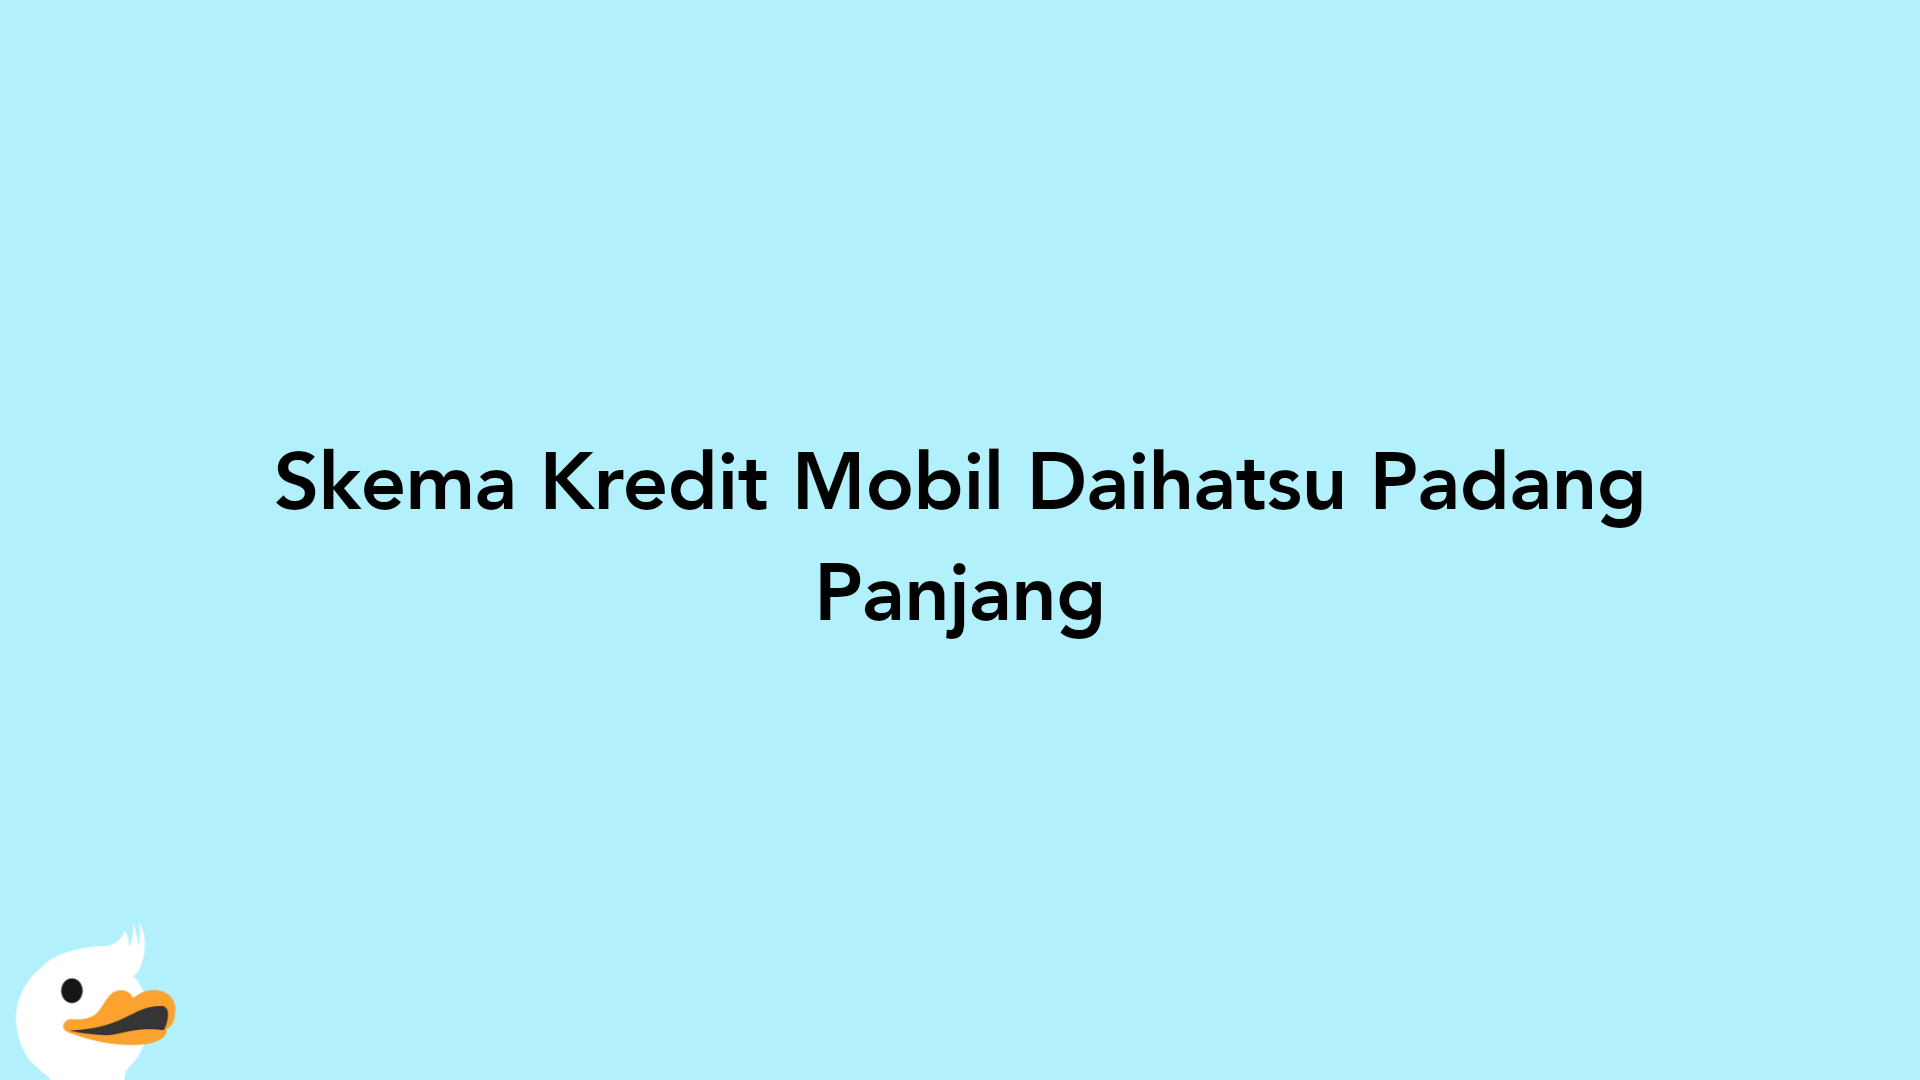 Skema Kredit Mobil Daihatsu Padang Panjang